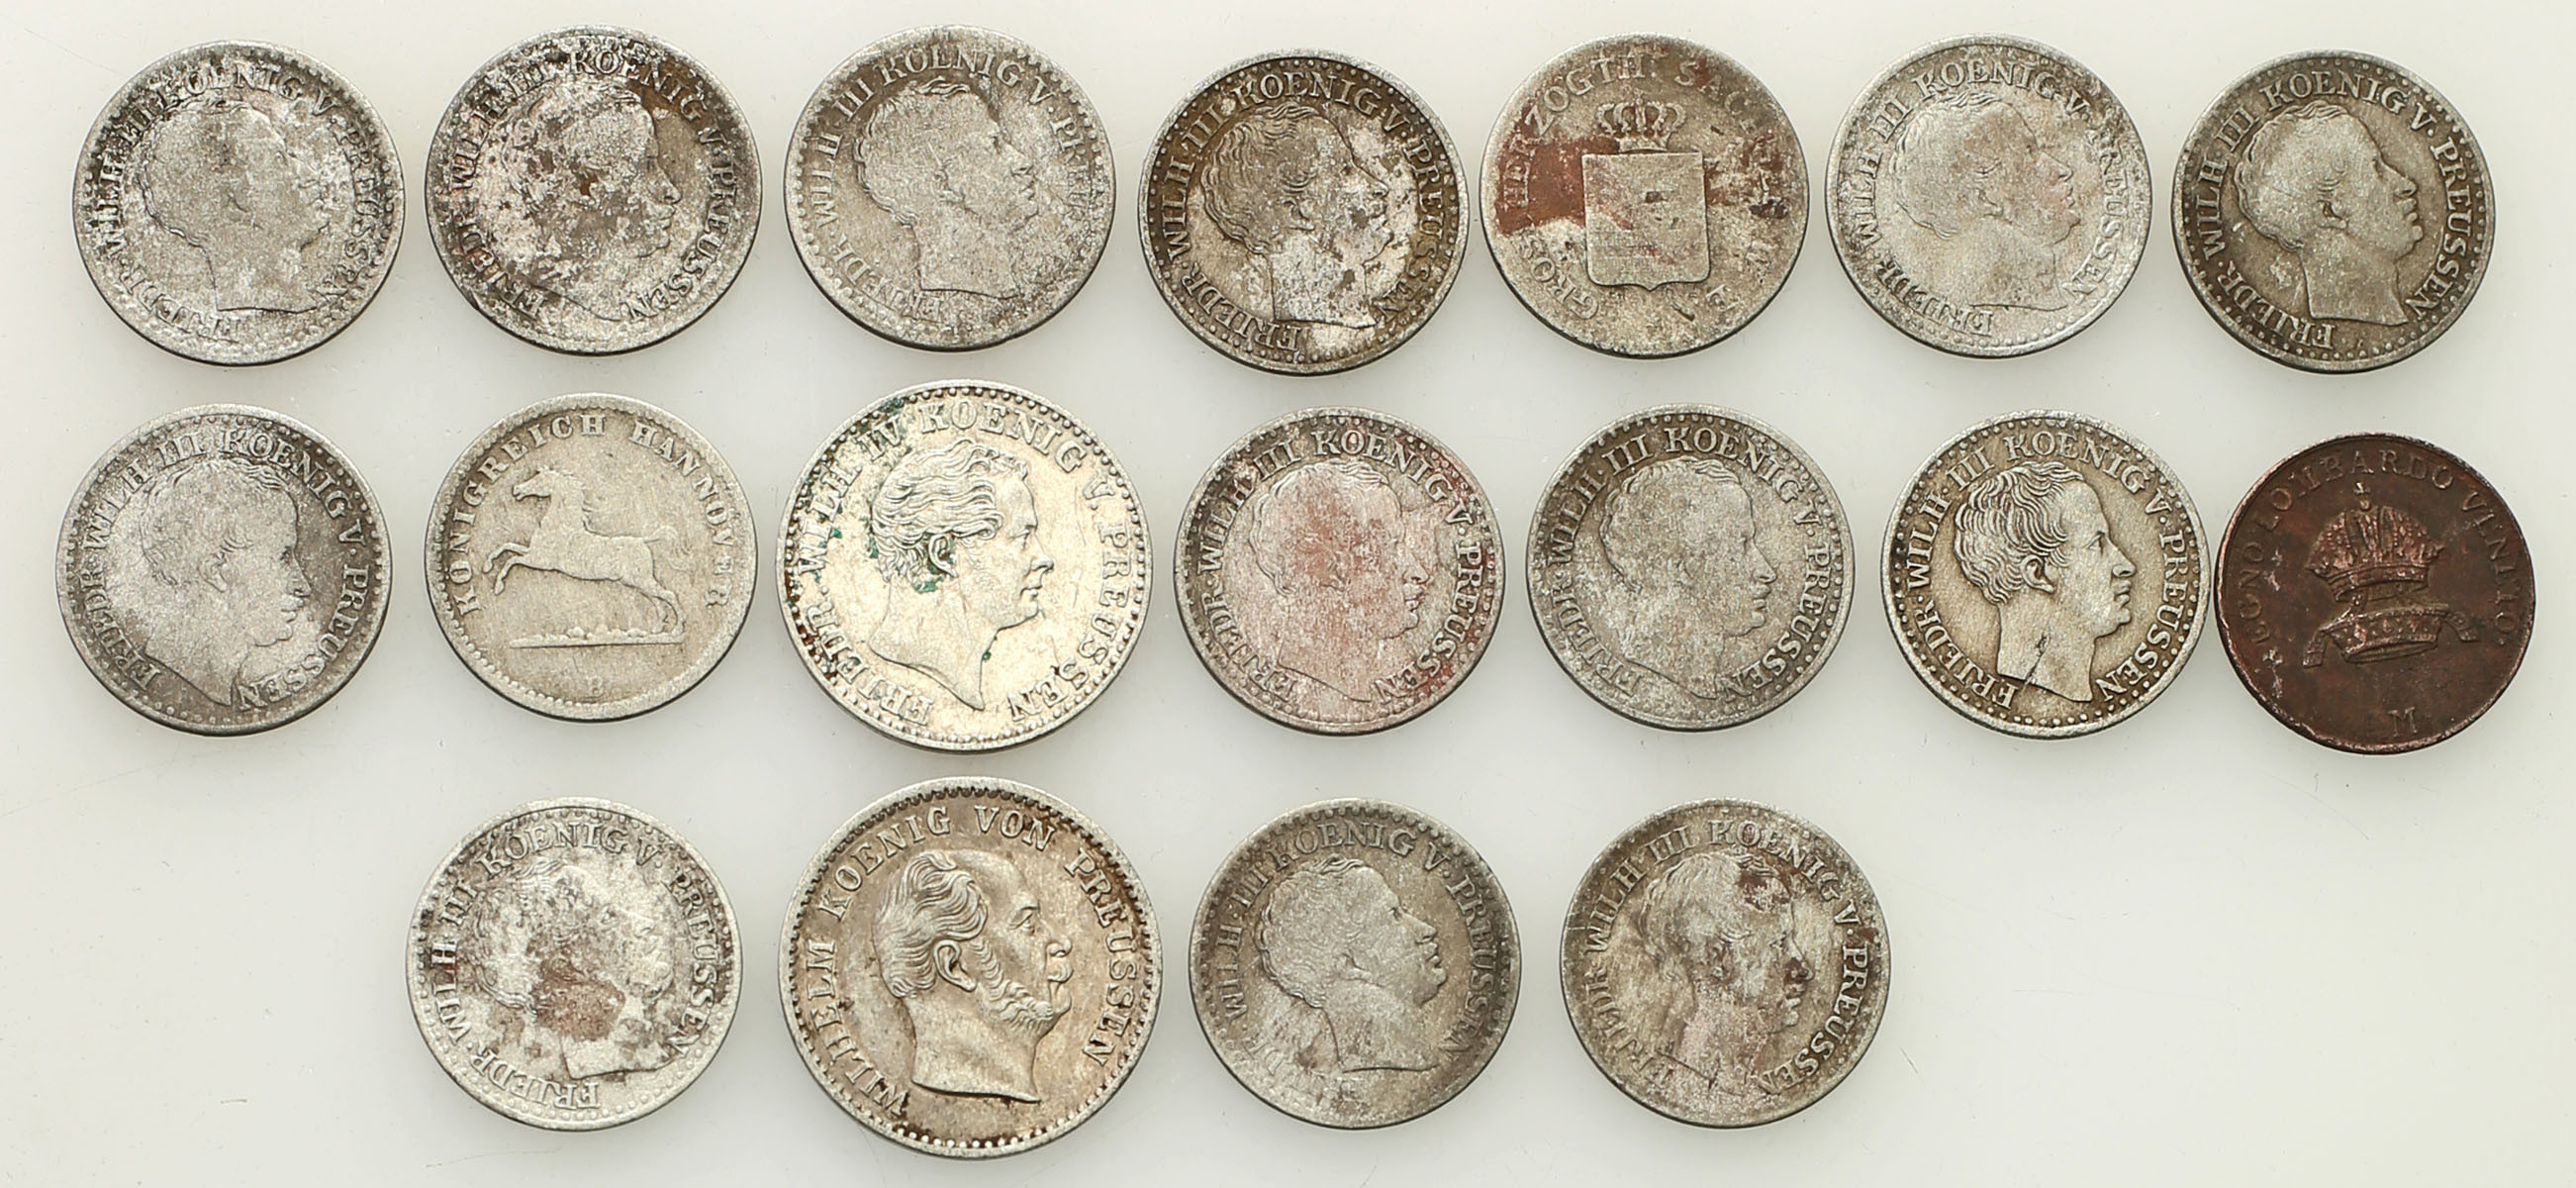 Niemcy, Prusy, Braunschweig-Calenberg, Saksonia 1 do 2 1/2 silbergroschen, 1822-1862, zestaw 18 monet